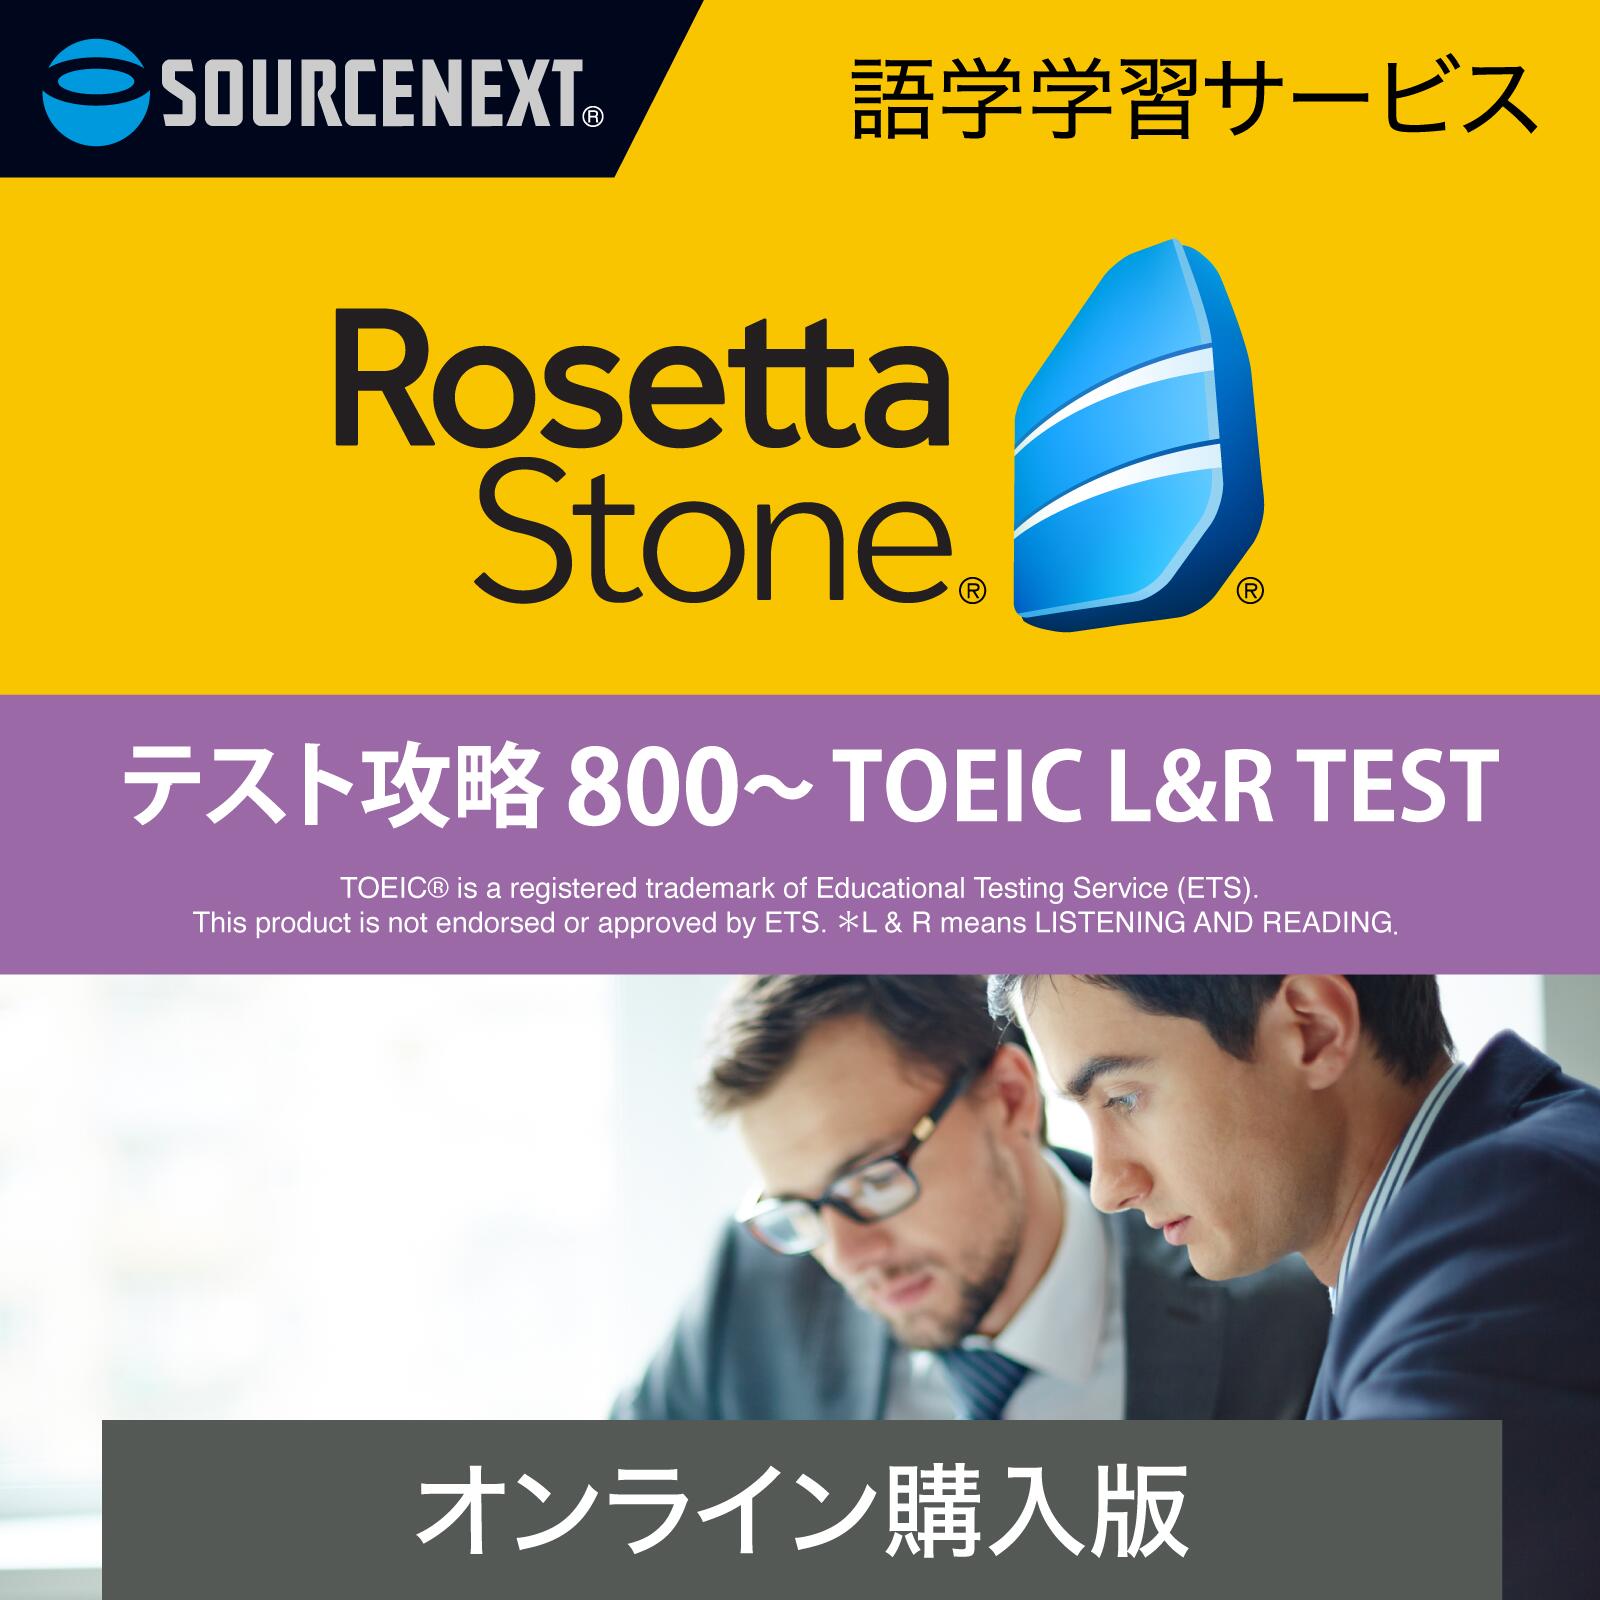 ソースネクスト ロゼッタストーン テスト攻略 800~TOEIC(R) LR TEST(最新) DL_SNR| Win Mac AndoroidiOS対応|オンラインコード版